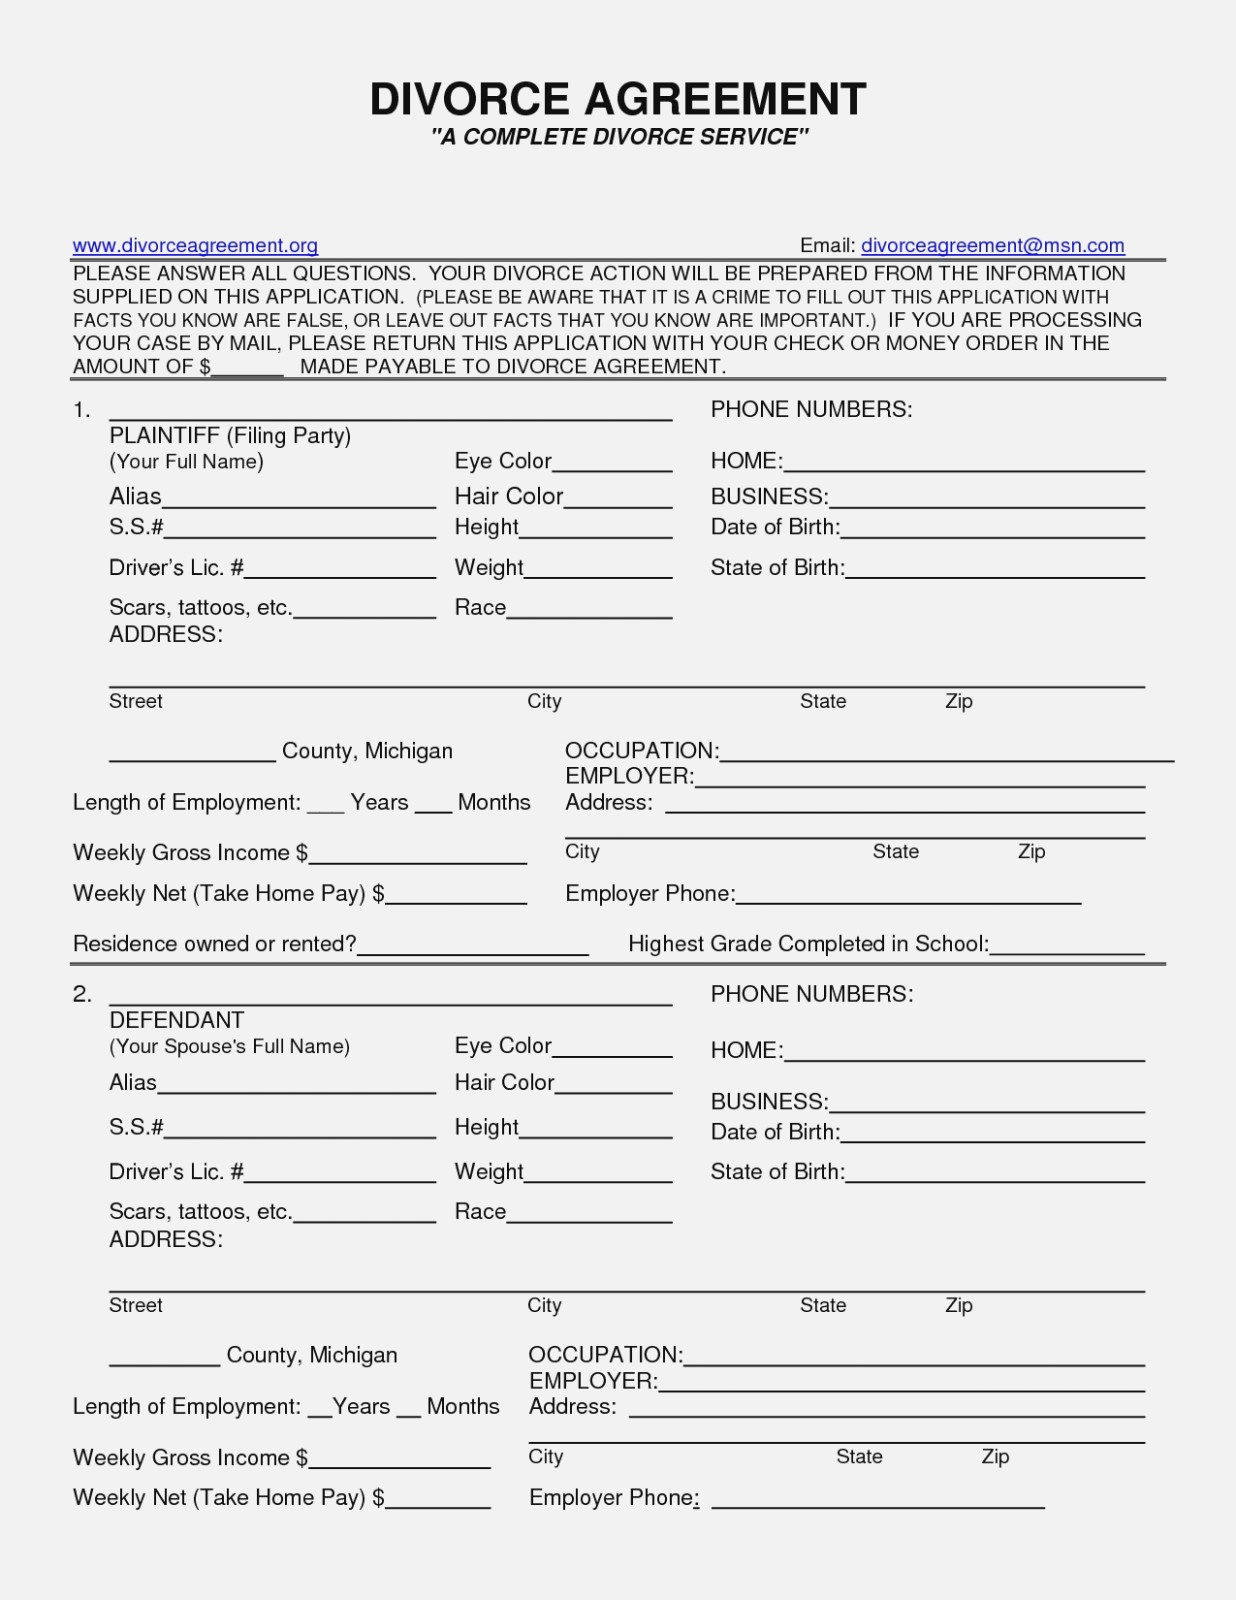 Sample Divorce Agreement Nj Luxury Form Free Printable Divorce - Free Printable Nj Divorce Forms